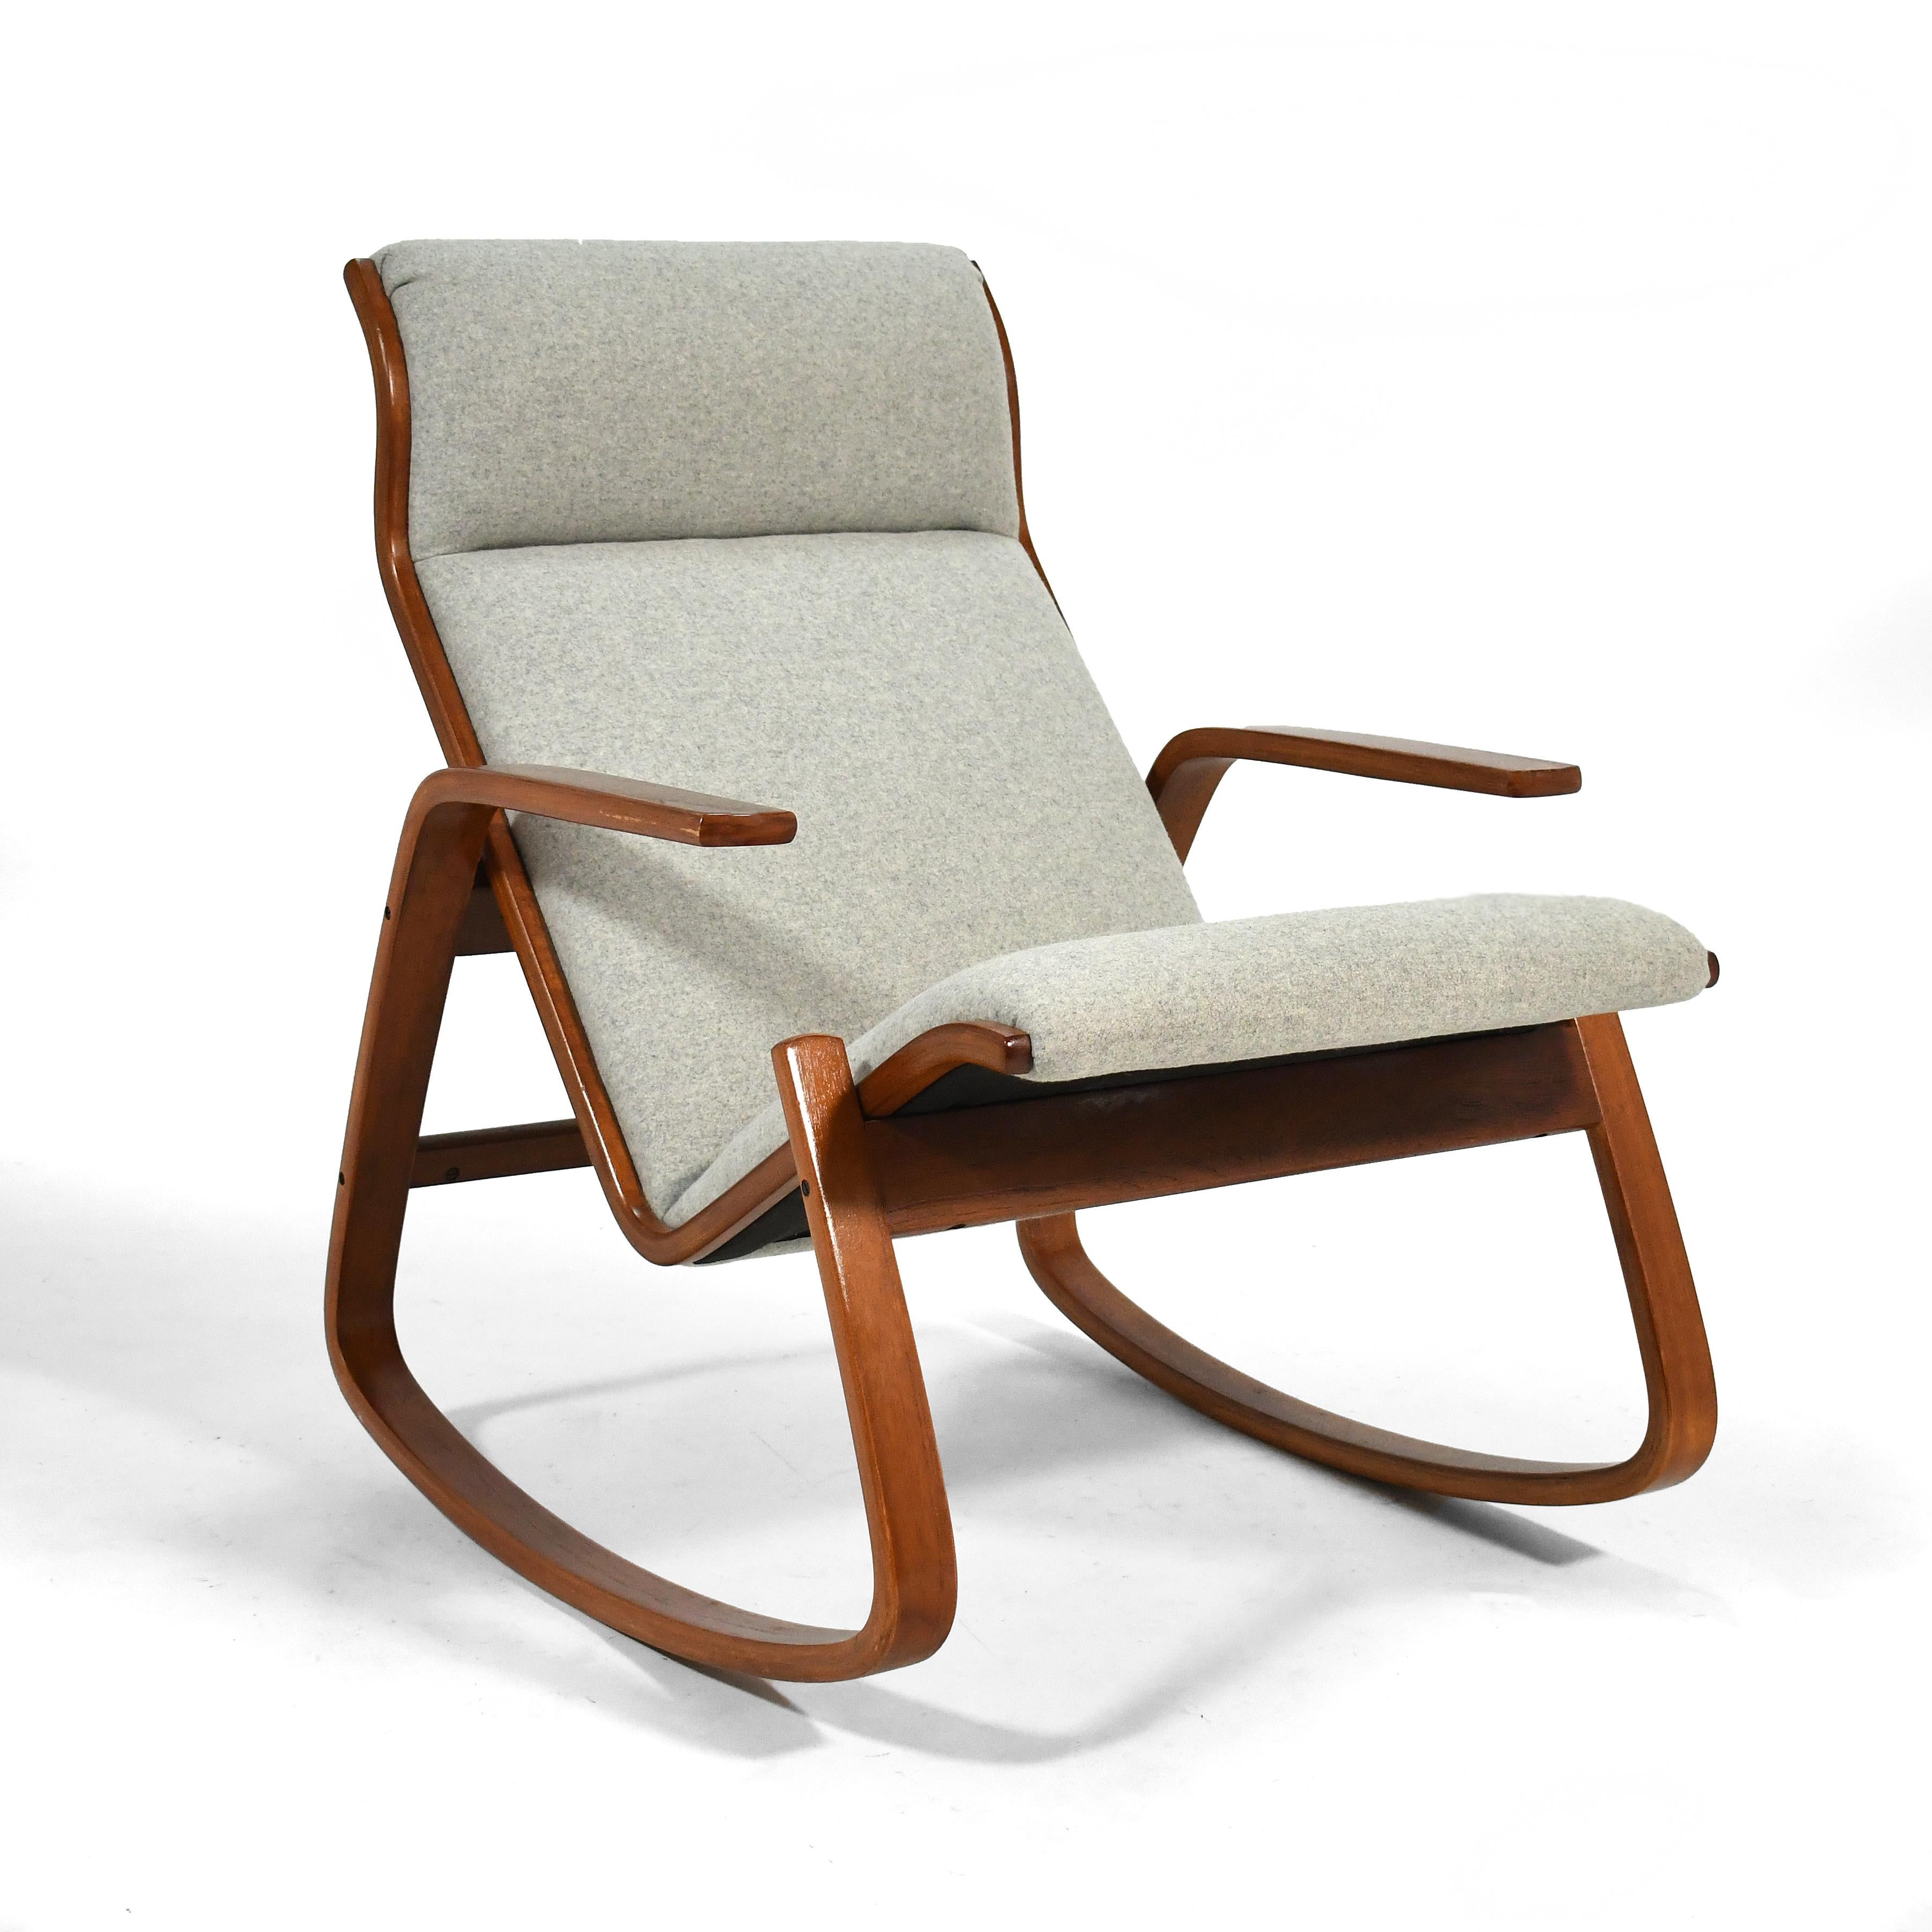 Ce fauteuil à bascule d'Ingmar Relling pour Westnofa, au design aussi confortable que visuellement saisissant, utilise un cadre en bois courbé pour soutenir un siège ergonomique. Nouvellement tapissé en Kvadrat Davina Melange dans un joli gris